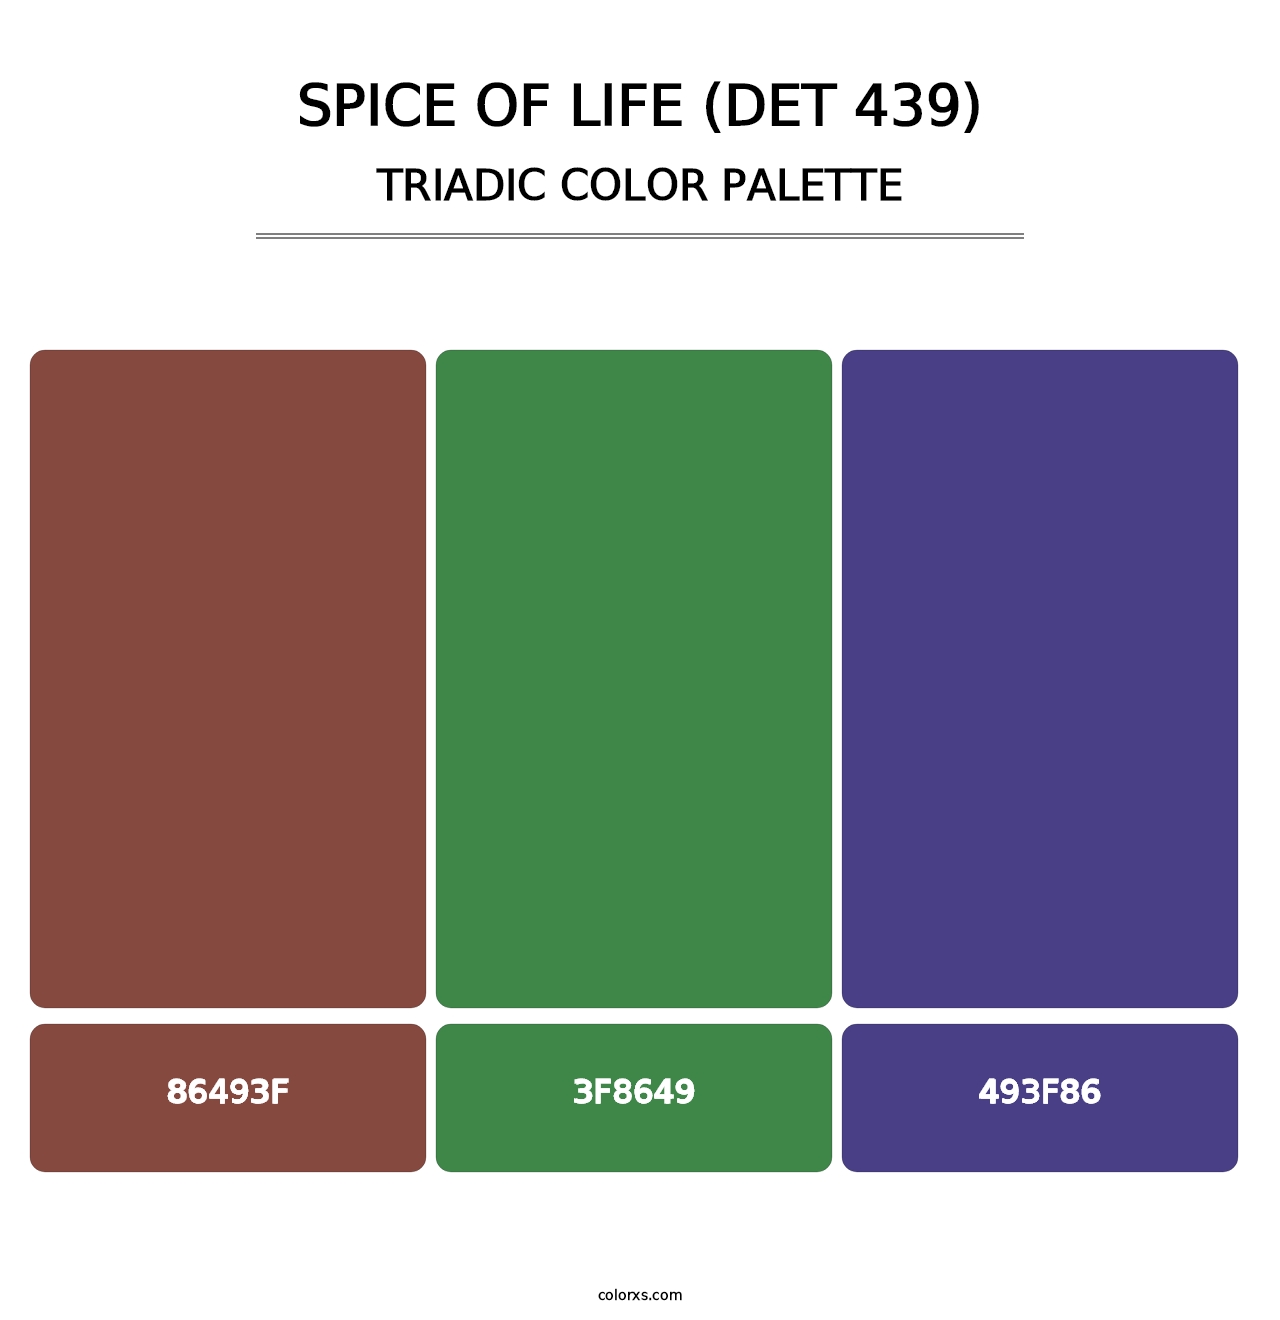 Spice of Life (DET 439) - Triadic Color Palette